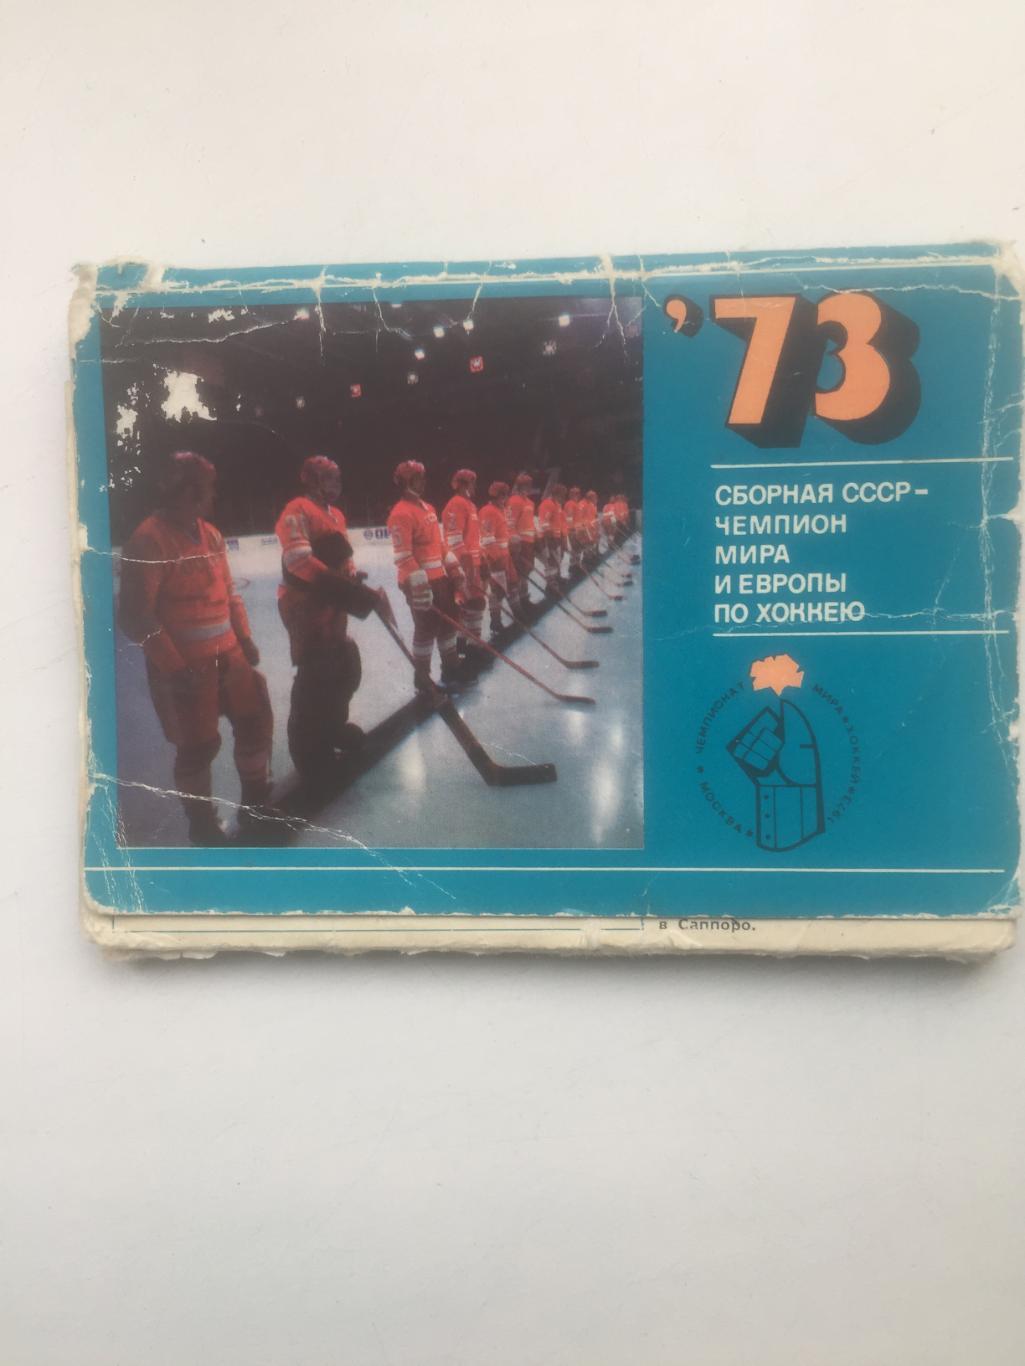 Сборная СССР - чемпион мира и Европы по хоккею 1973 Набор цветных открыток